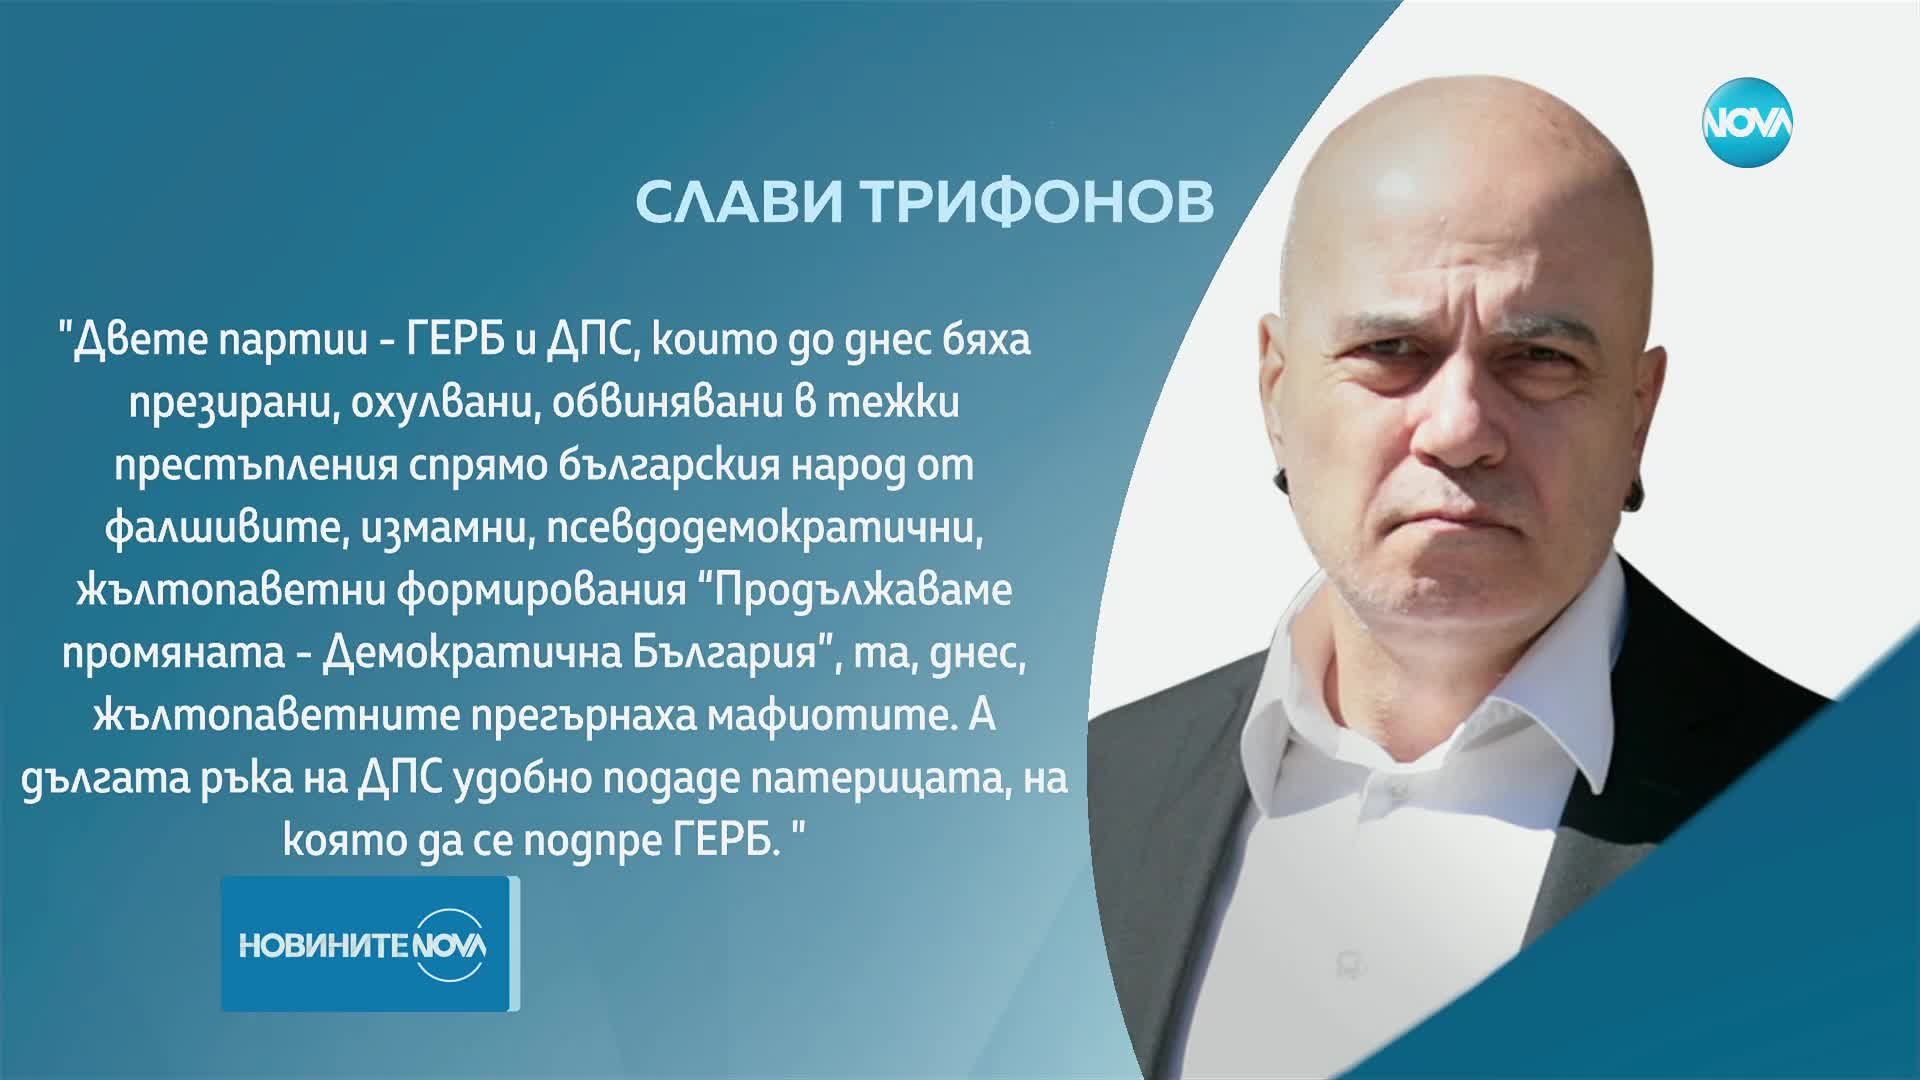 Слави Трифонов: Дългата ръка на ДПС удобно подаде патерицата, на която да се подпре ГЕРБ